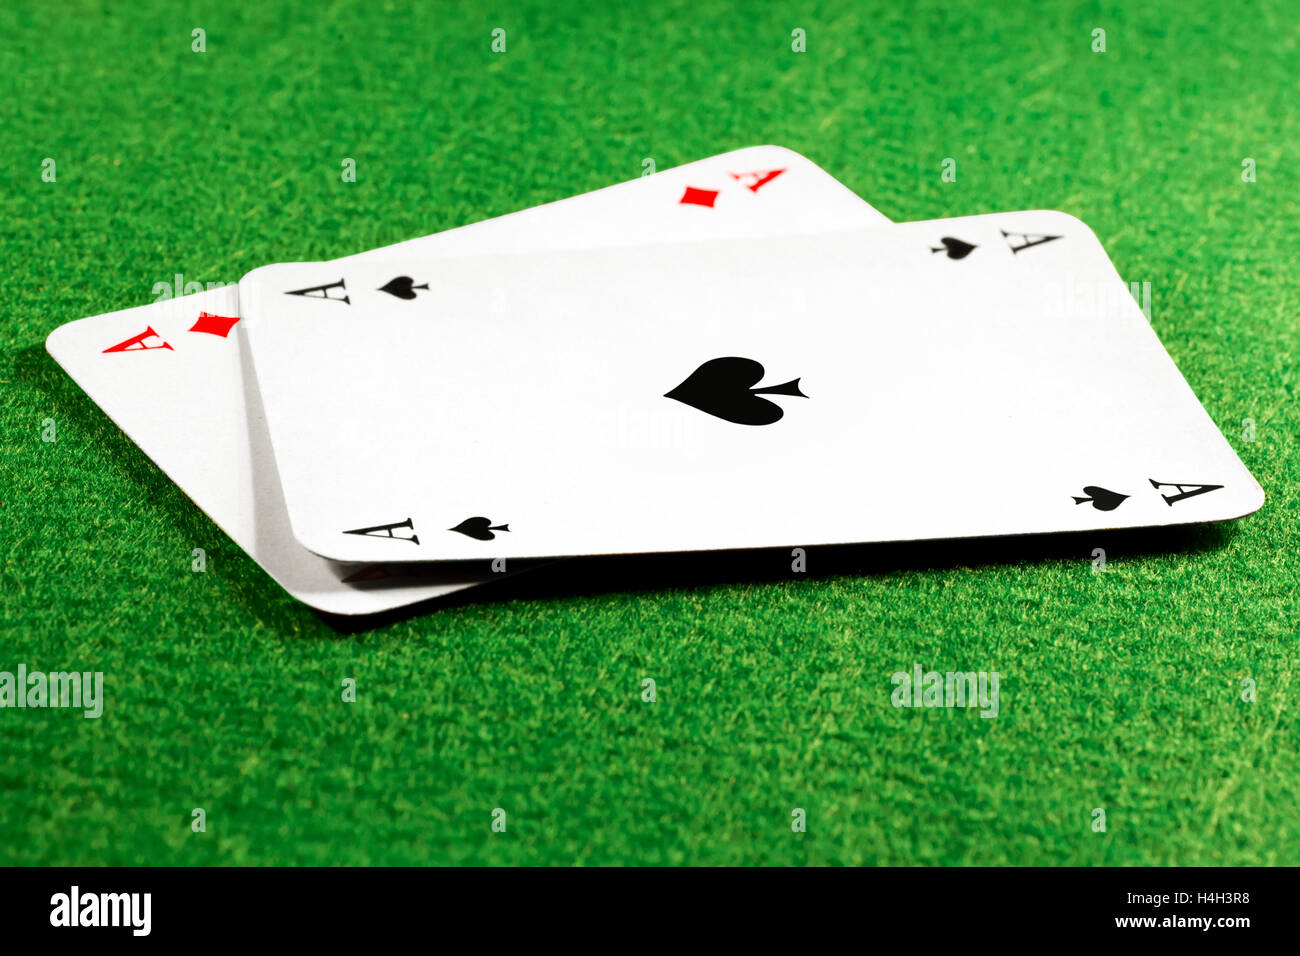 Zwei Asse auf grün fühlte sich Casino-Tisch, Ass, Pik an der Spitze. Selektiven Fokus auf das Pik-symbol Stockfoto